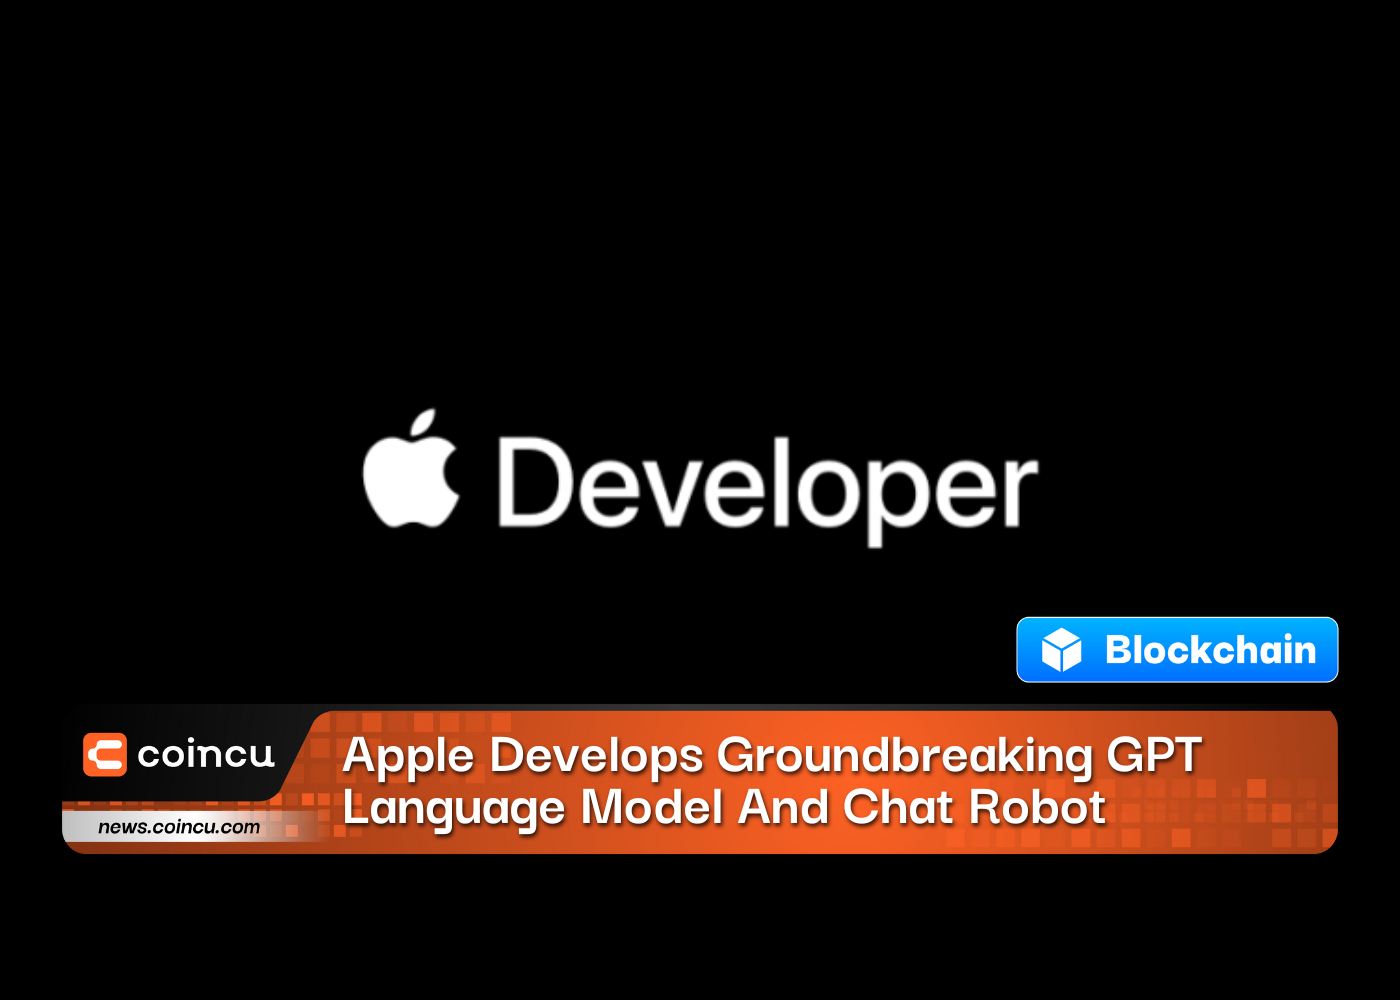 Apple Develops Groundbreaking GPT